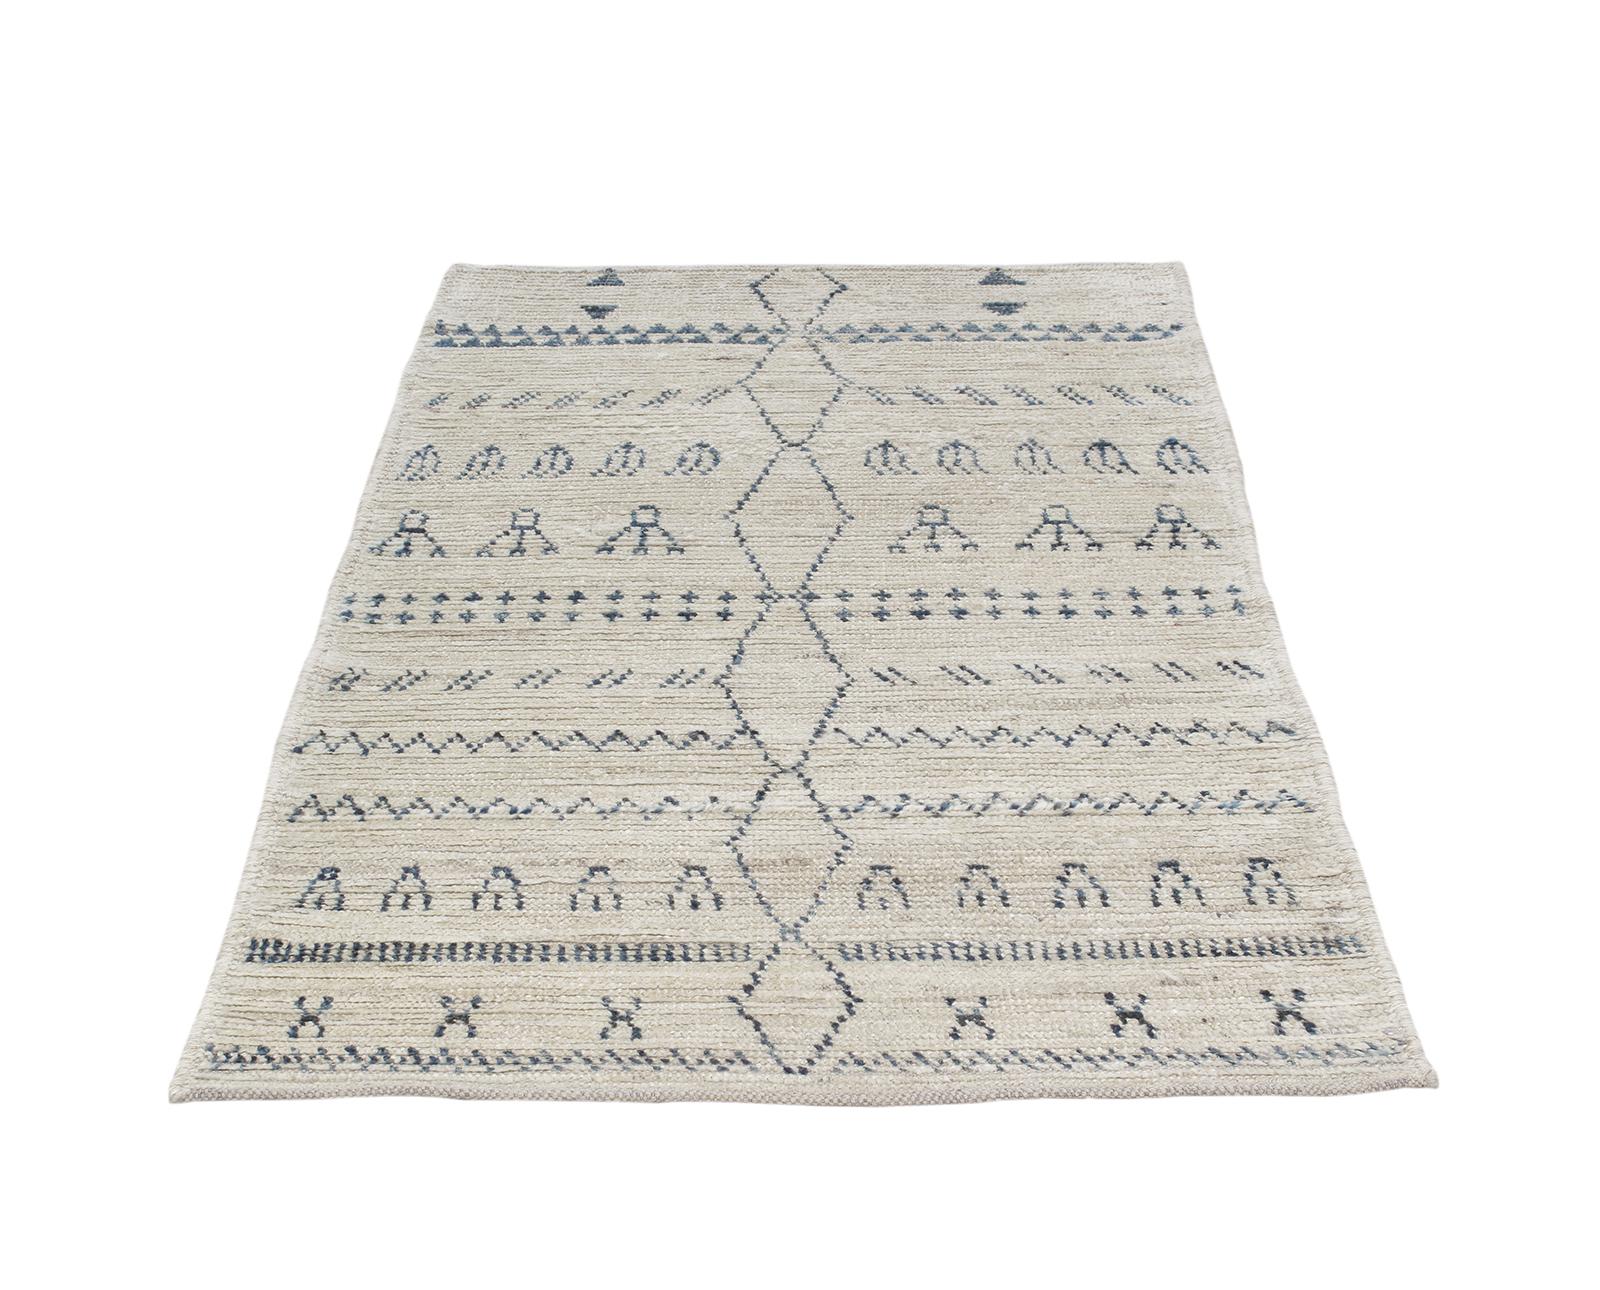 Dieser Teppich ähnelt den Berber-Stammesteppichen, die seit Jahrhunderten in Marokko in der Region des Atlasgebirges hergestellt werden. Es wird aus derselben handgekardeten, handgesponnenen Wolle hergestellt und von lokalen Webern in Afghanistan in